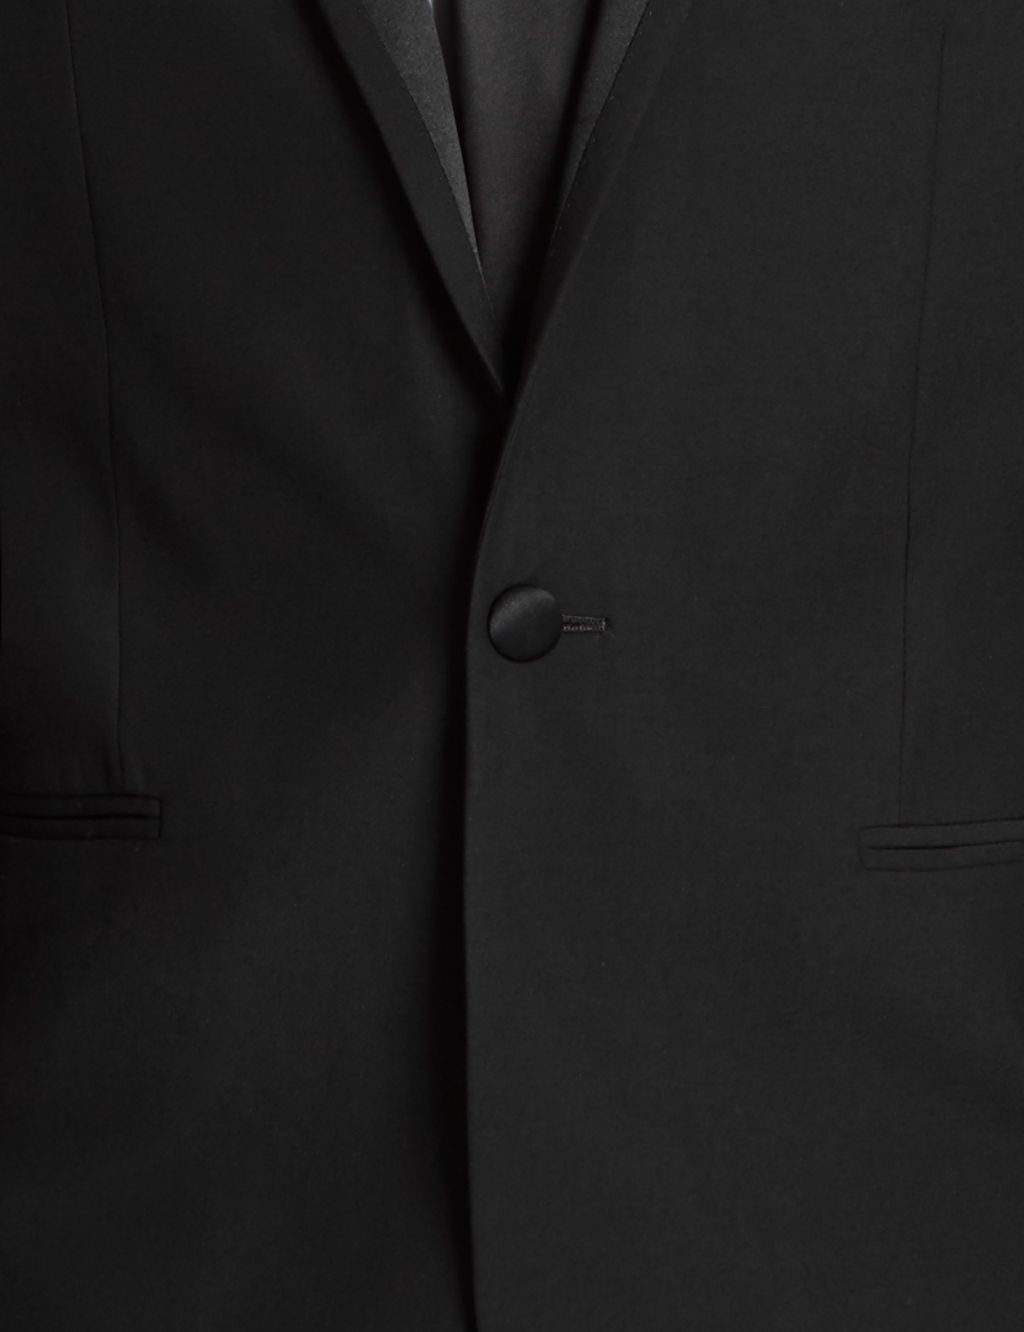 Super Slim Fit Peak Lapel 1 Button Eveningwear Jacket | Limited Edition ...